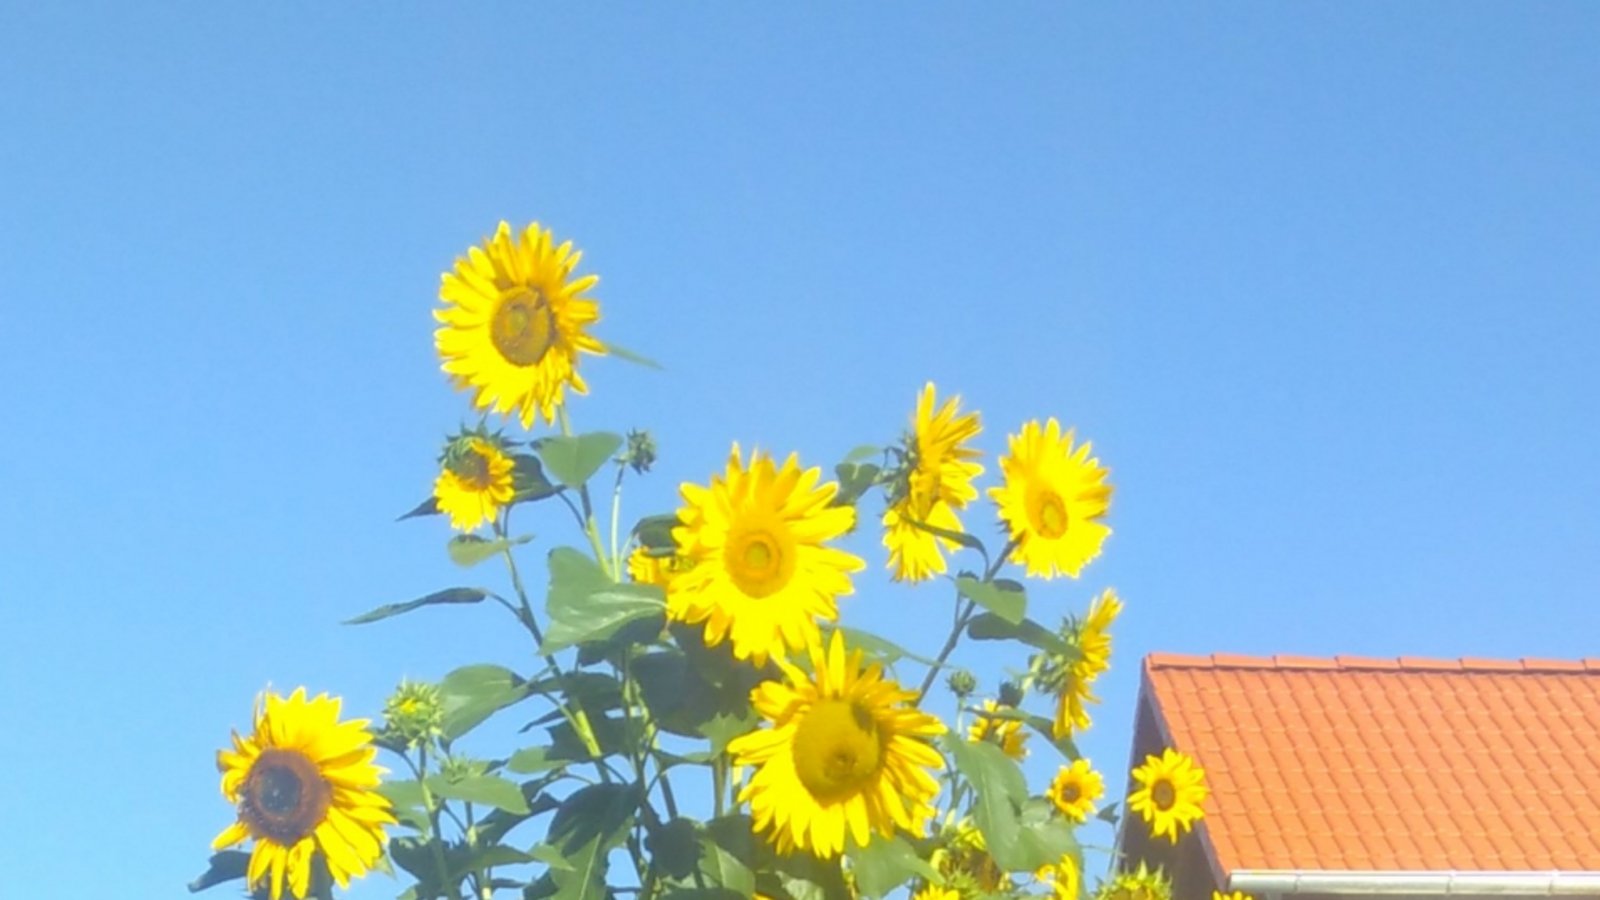 Sonnenblumenfreude in Horrheim von Petra Oetinger.